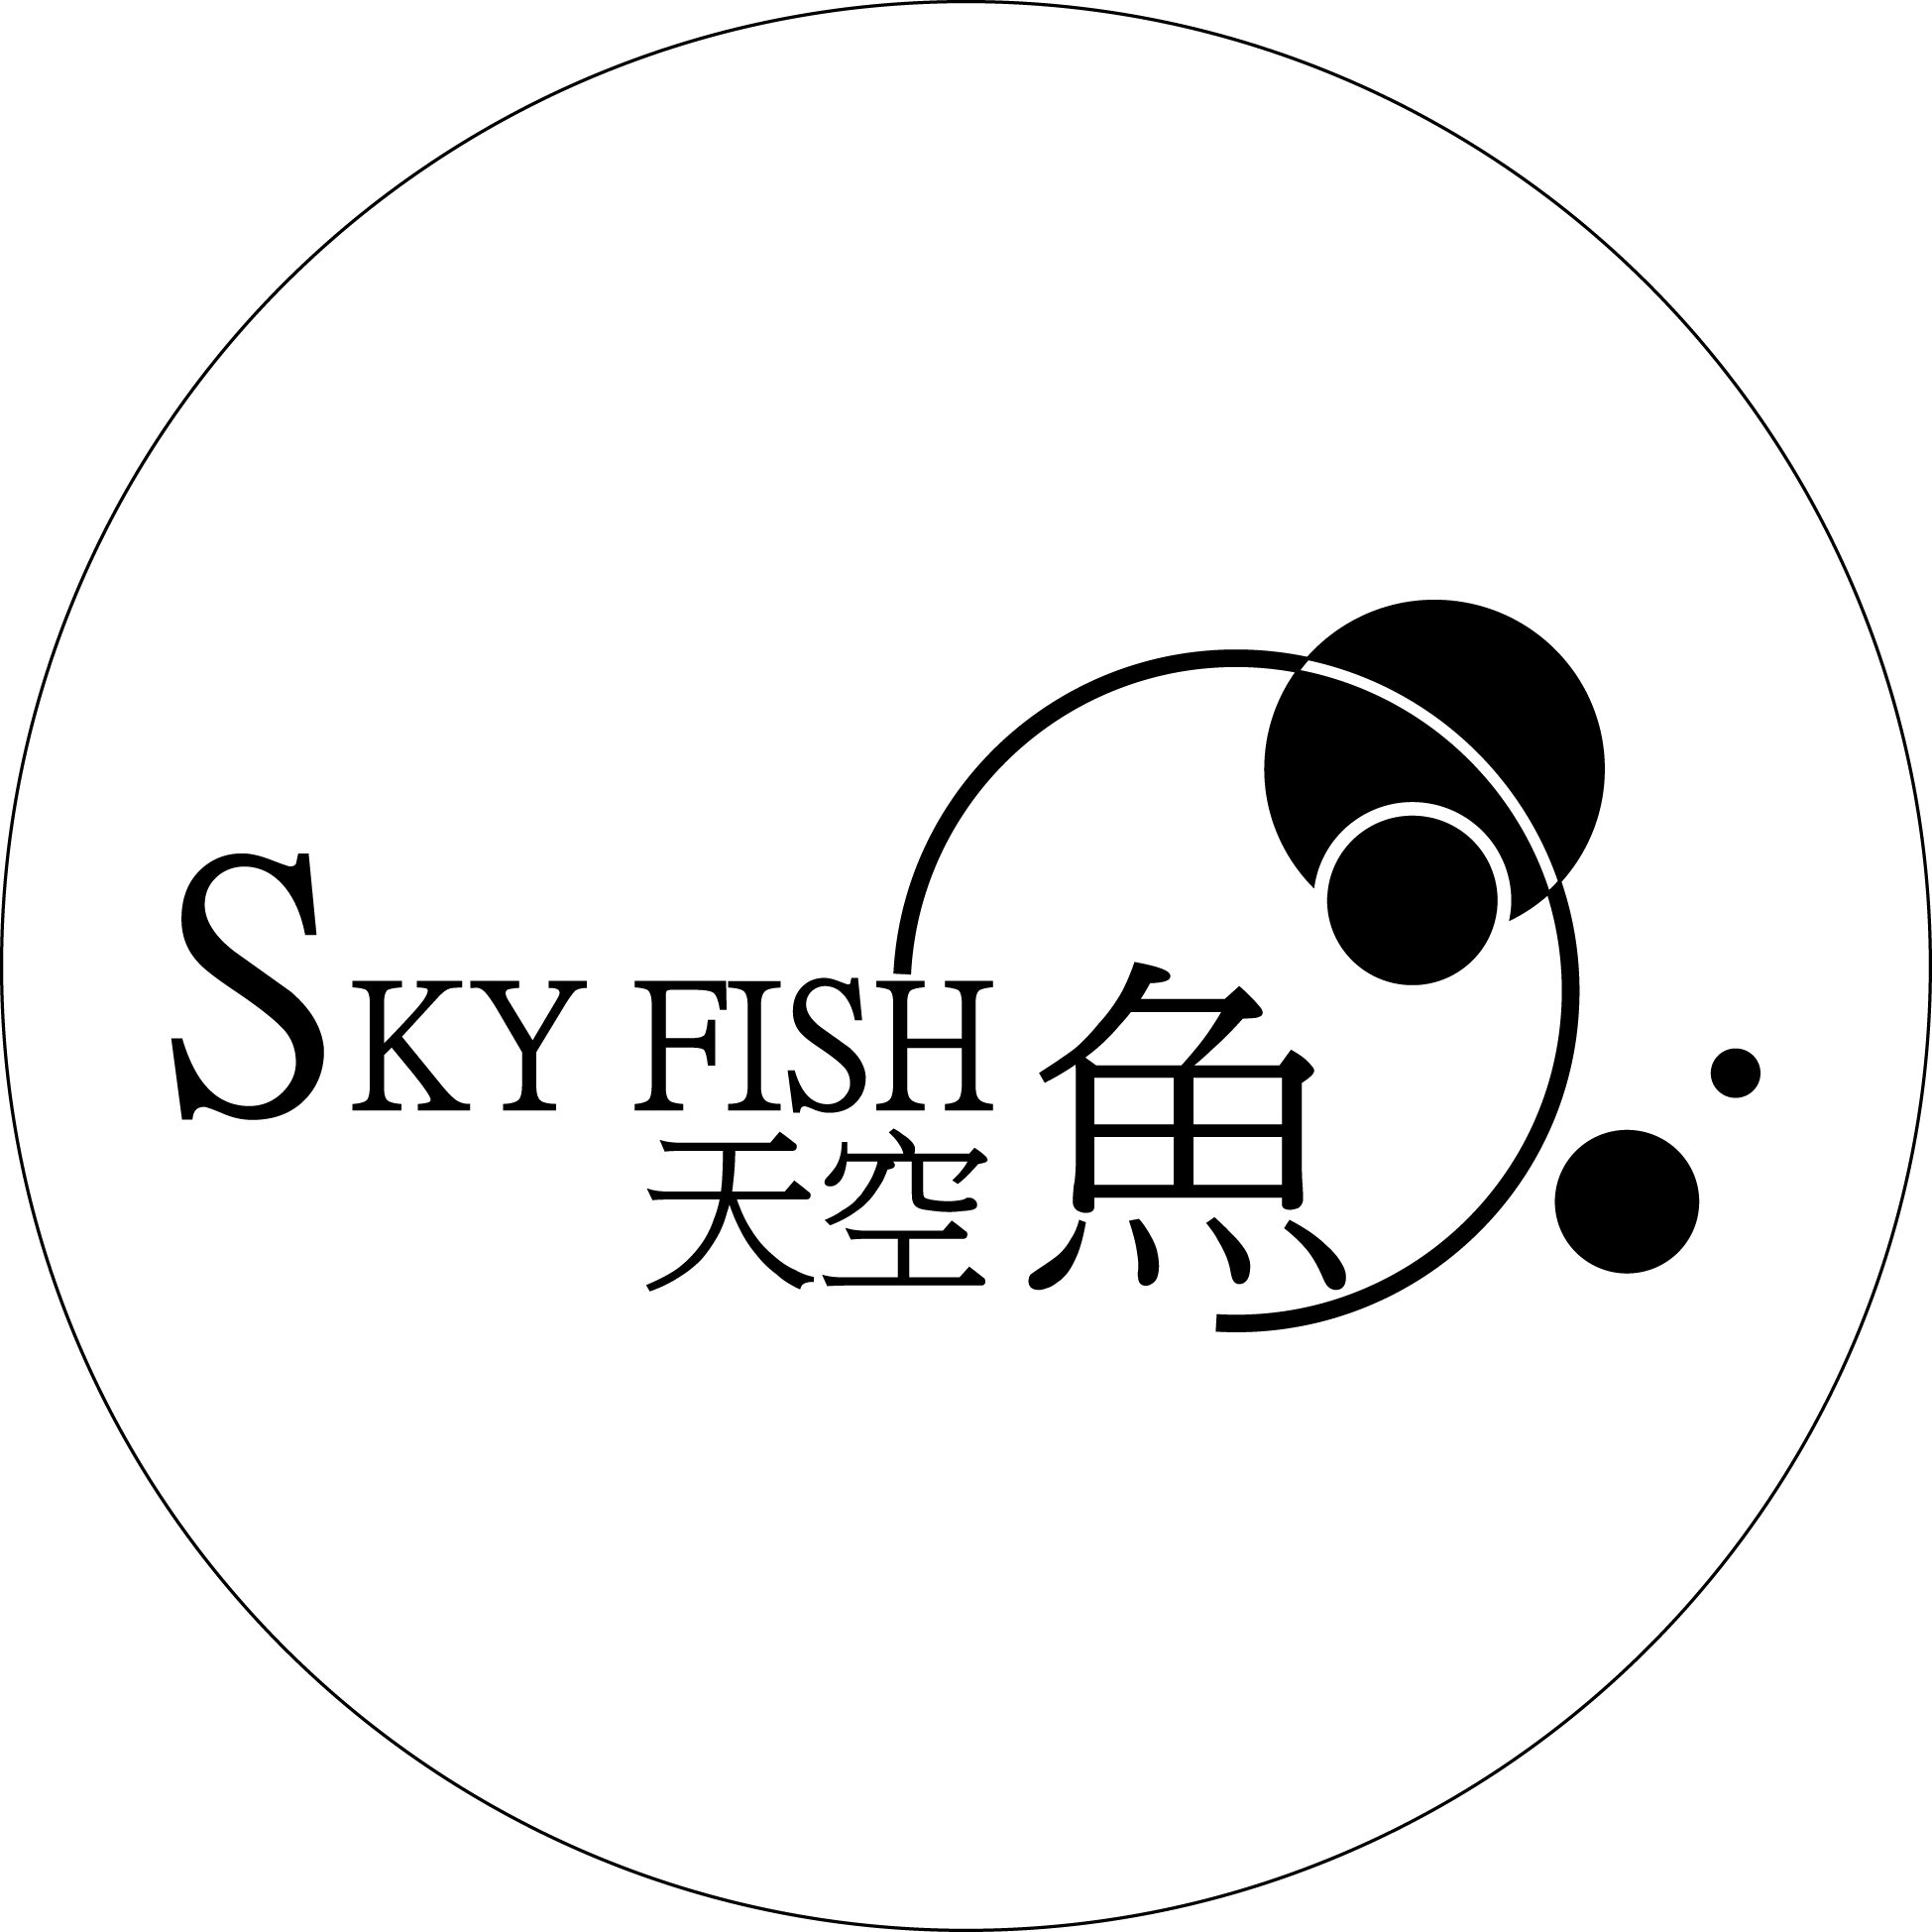 観賞エビ、観賞魚関連商品通販（無店舗販売・海外発送対応あり）
 お問い合わせはメールへどうぞ。skyfish.online@gmail.com